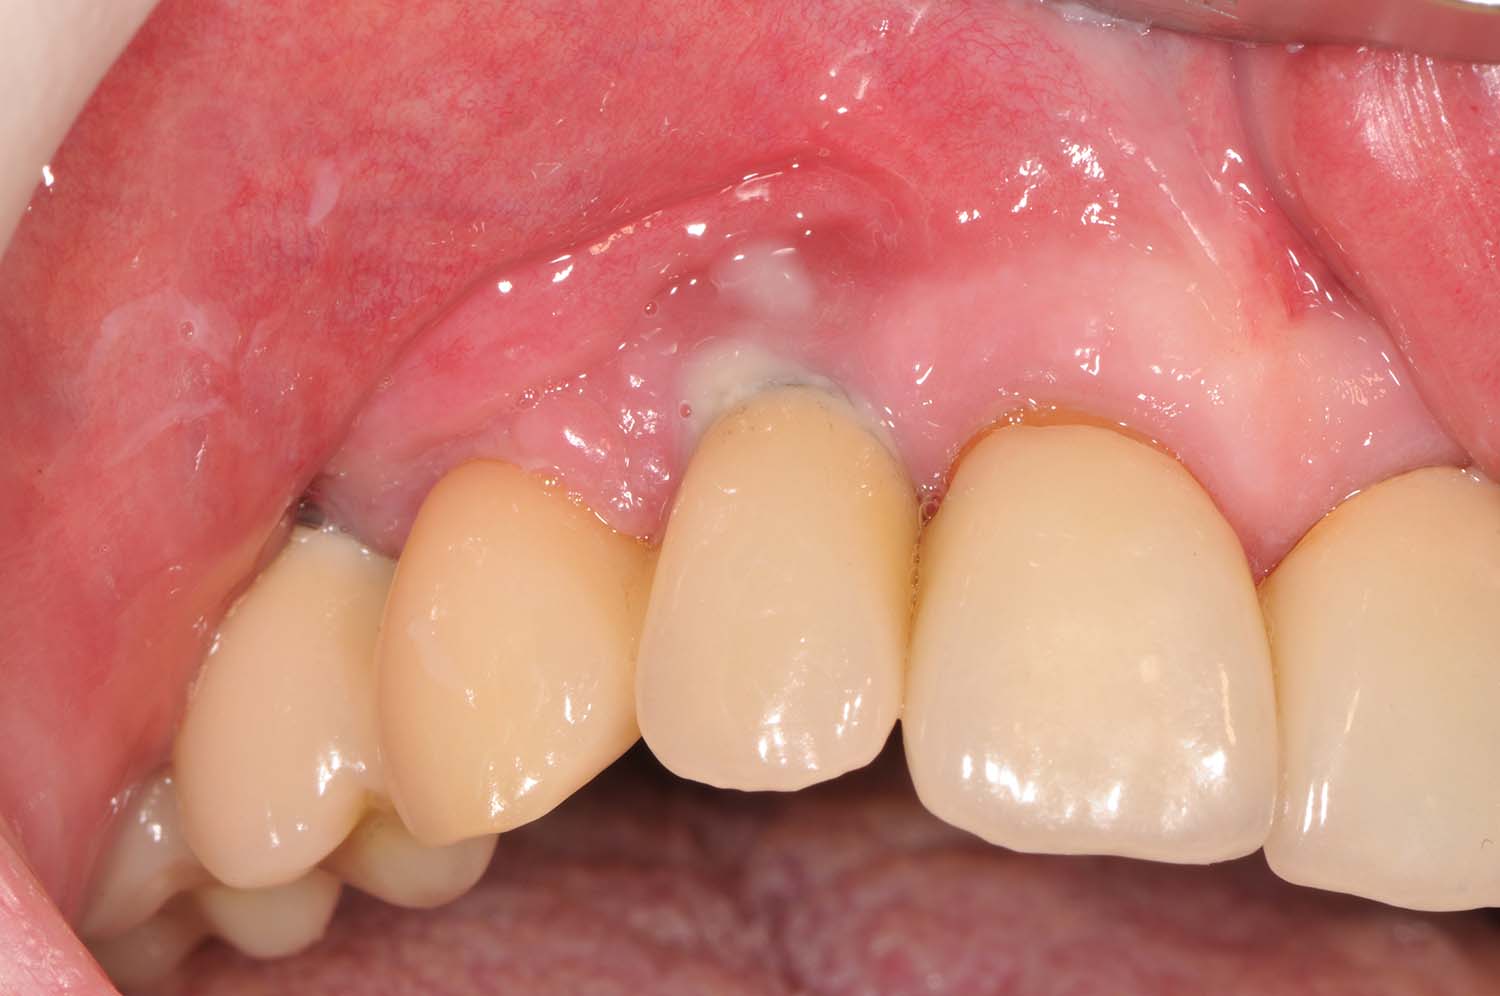 Periimplantitis am Implantat mit Entzündung des Zahnfleischs, Knochenrückgang am Implantat und Eiter